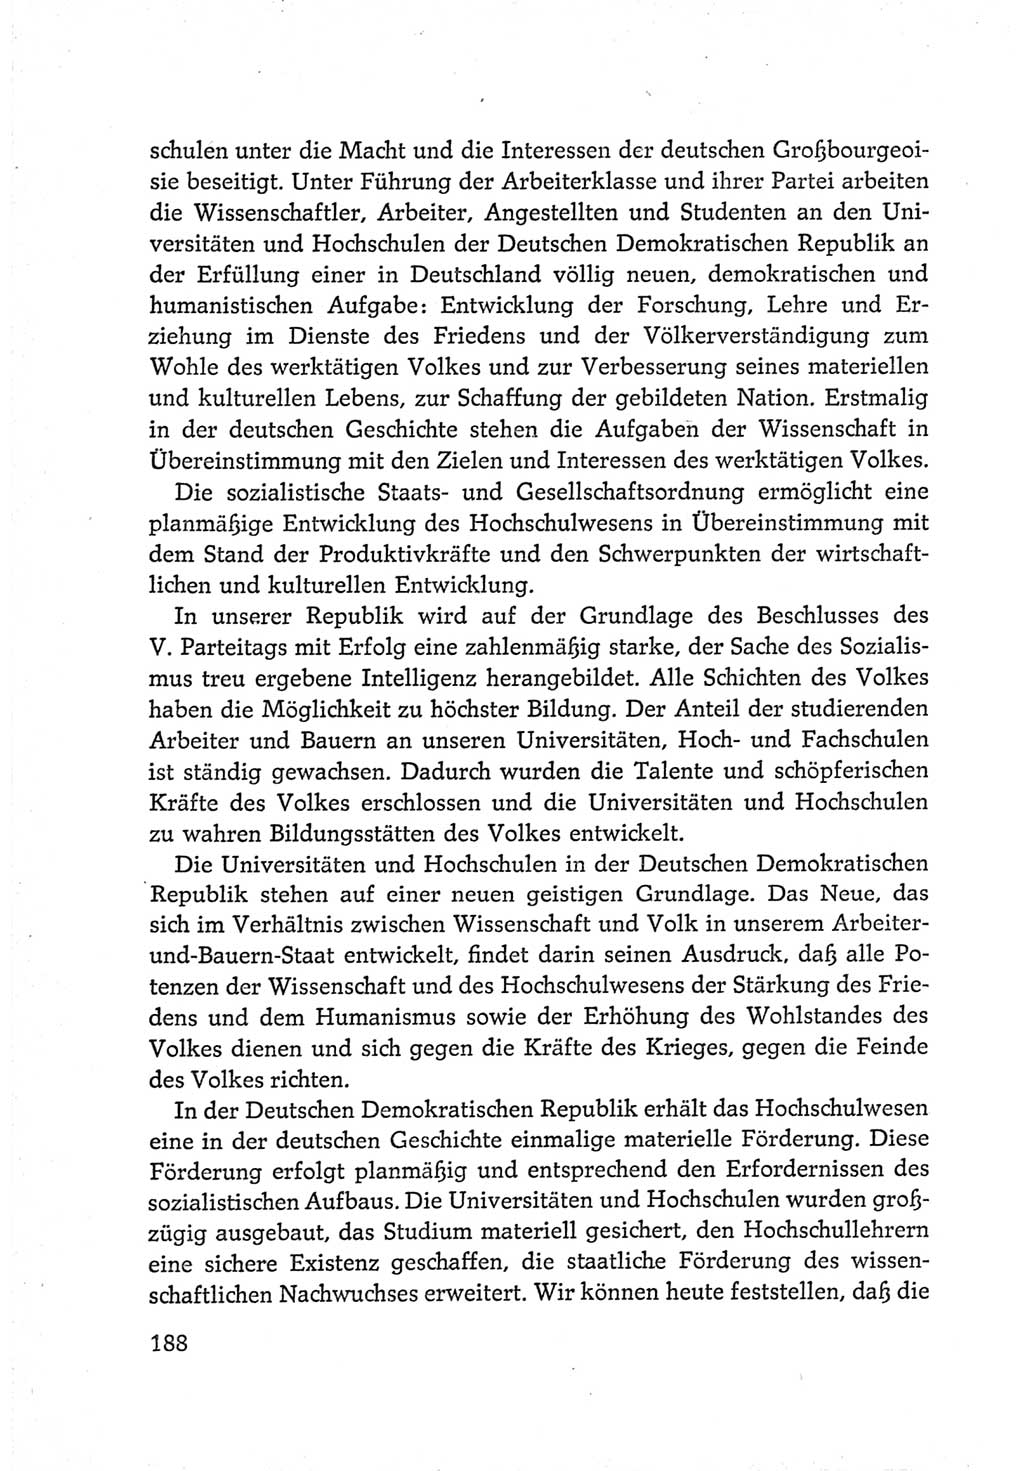 Protokoll der Verhandlungen des Ⅵ. Parteitages der Sozialistischen Einheitspartei Deutschlands (SED) [Deutsche Demokratische Republik (DDR)] 1963, Band Ⅳ, Seite 188 (Prot. Verh. Ⅵ. PT SED DDR 1963, Bd. Ⅳ, S. 188)